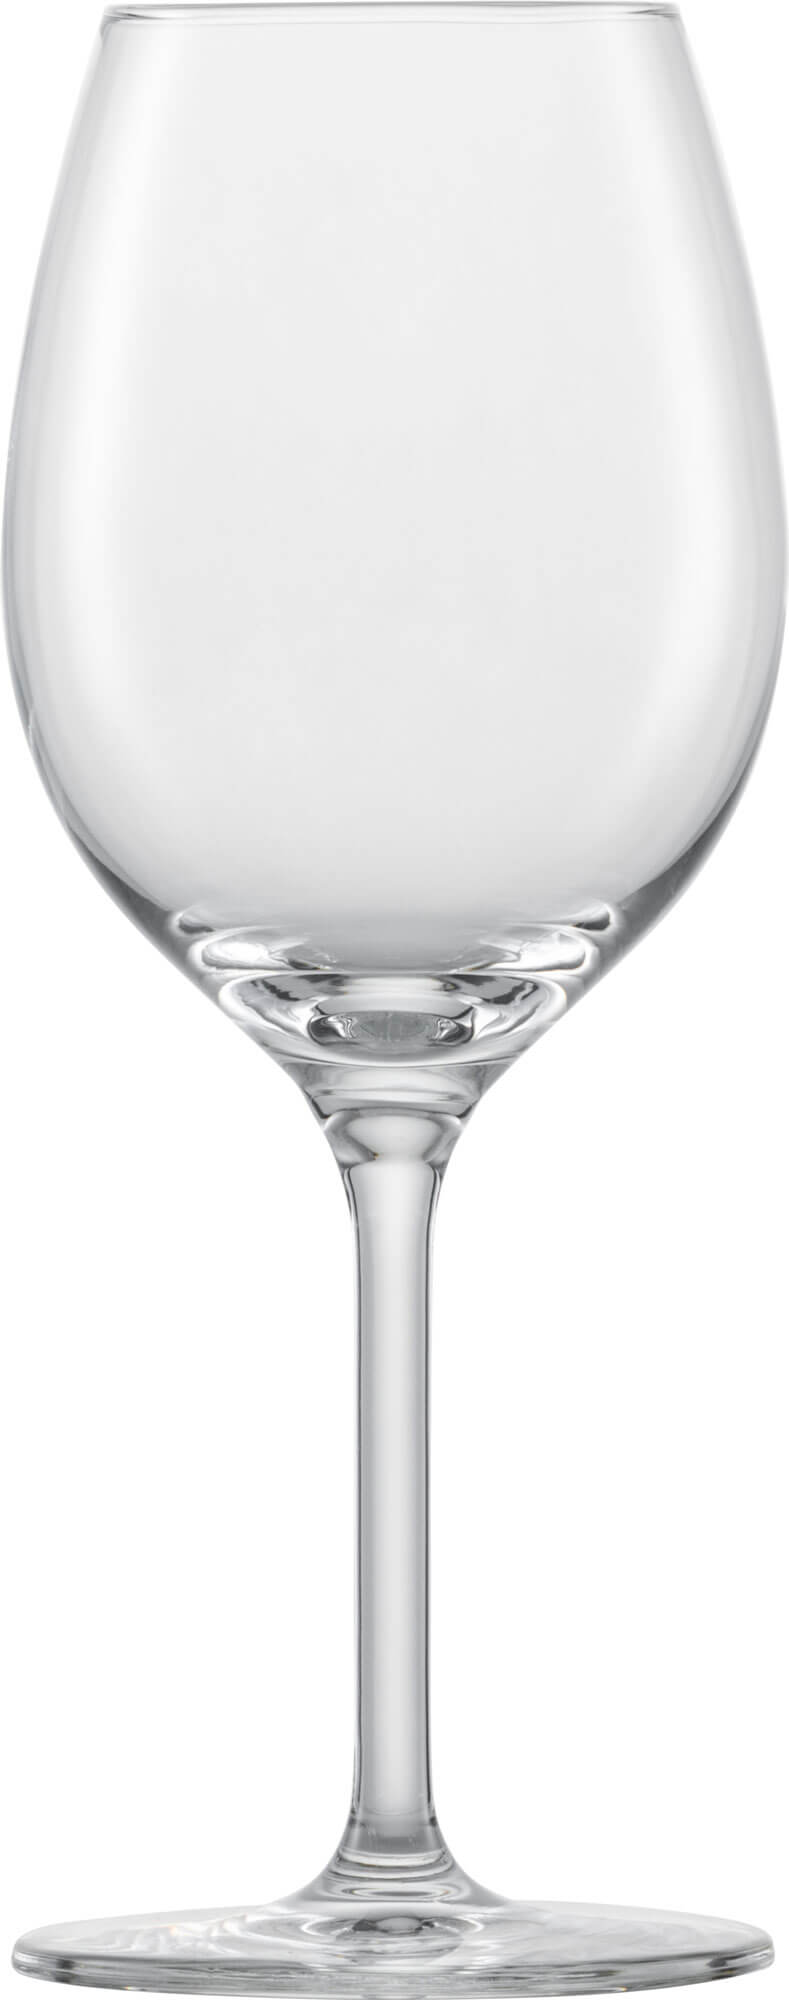 Chardonnay glass Banquet, Schott Zwiesel - 368ml (1 pc.)